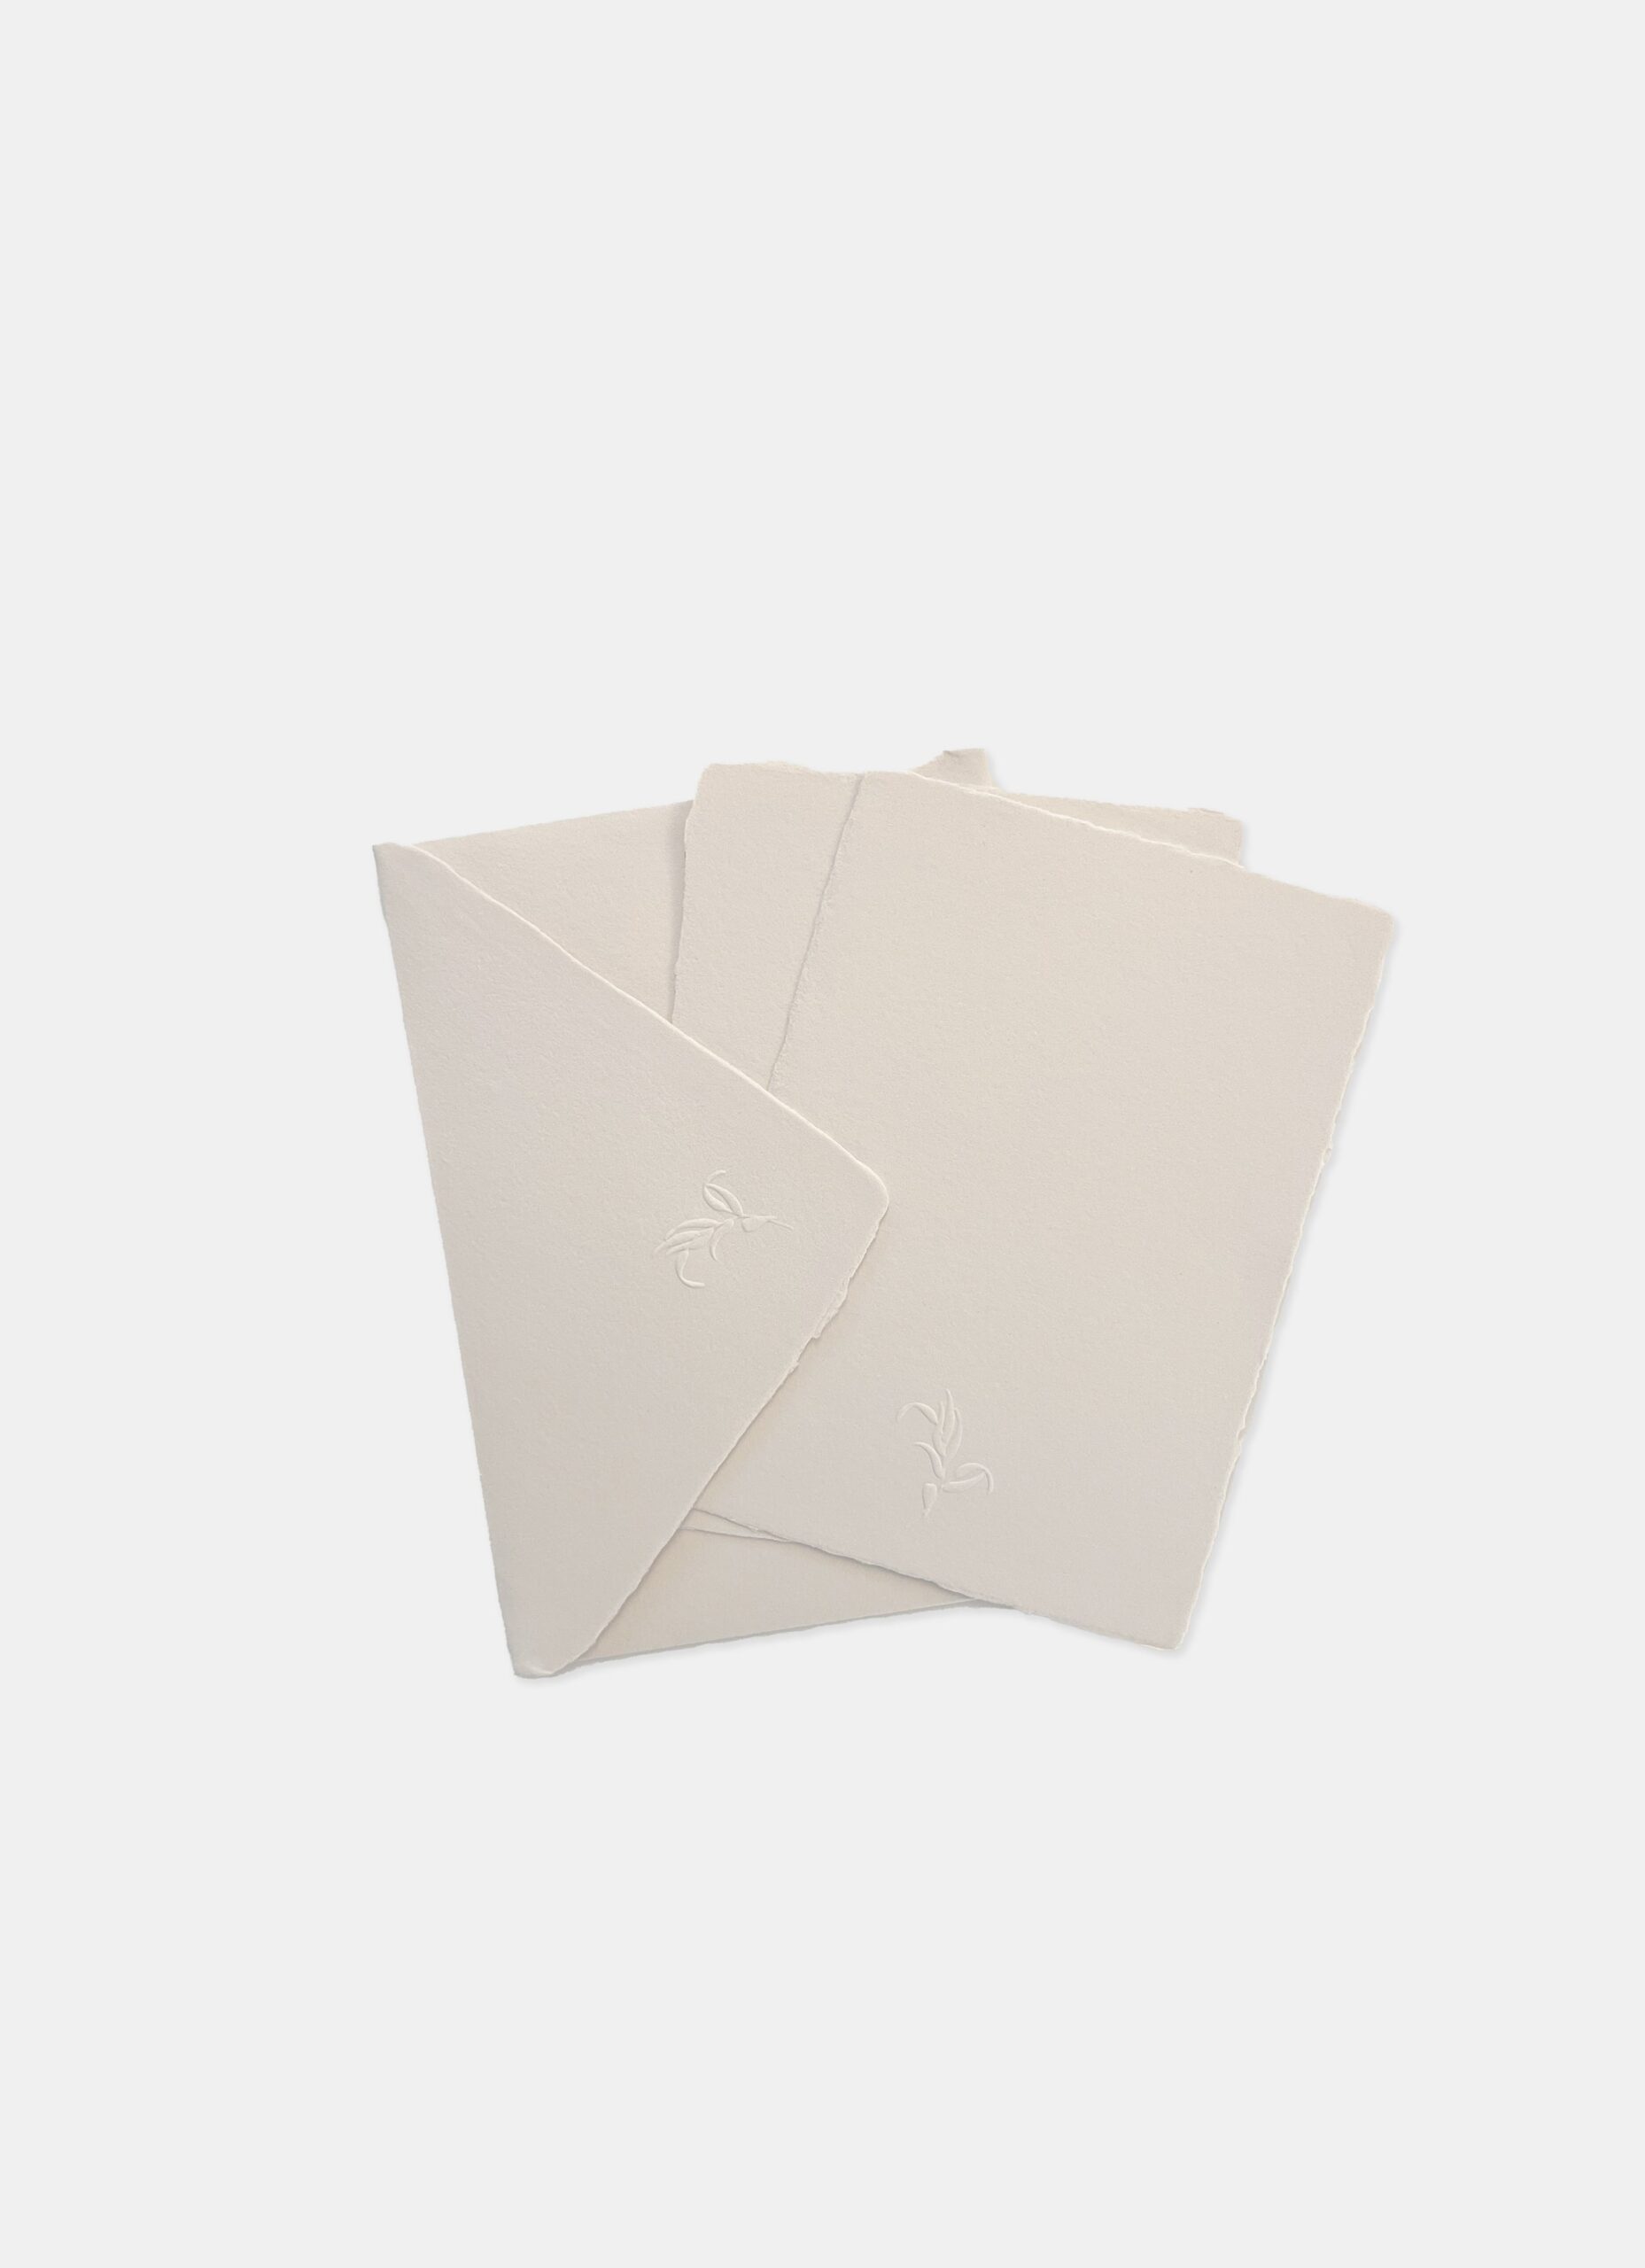 Eliv Rosenkranz - Embossed Handmade Paper Set - off white/cream